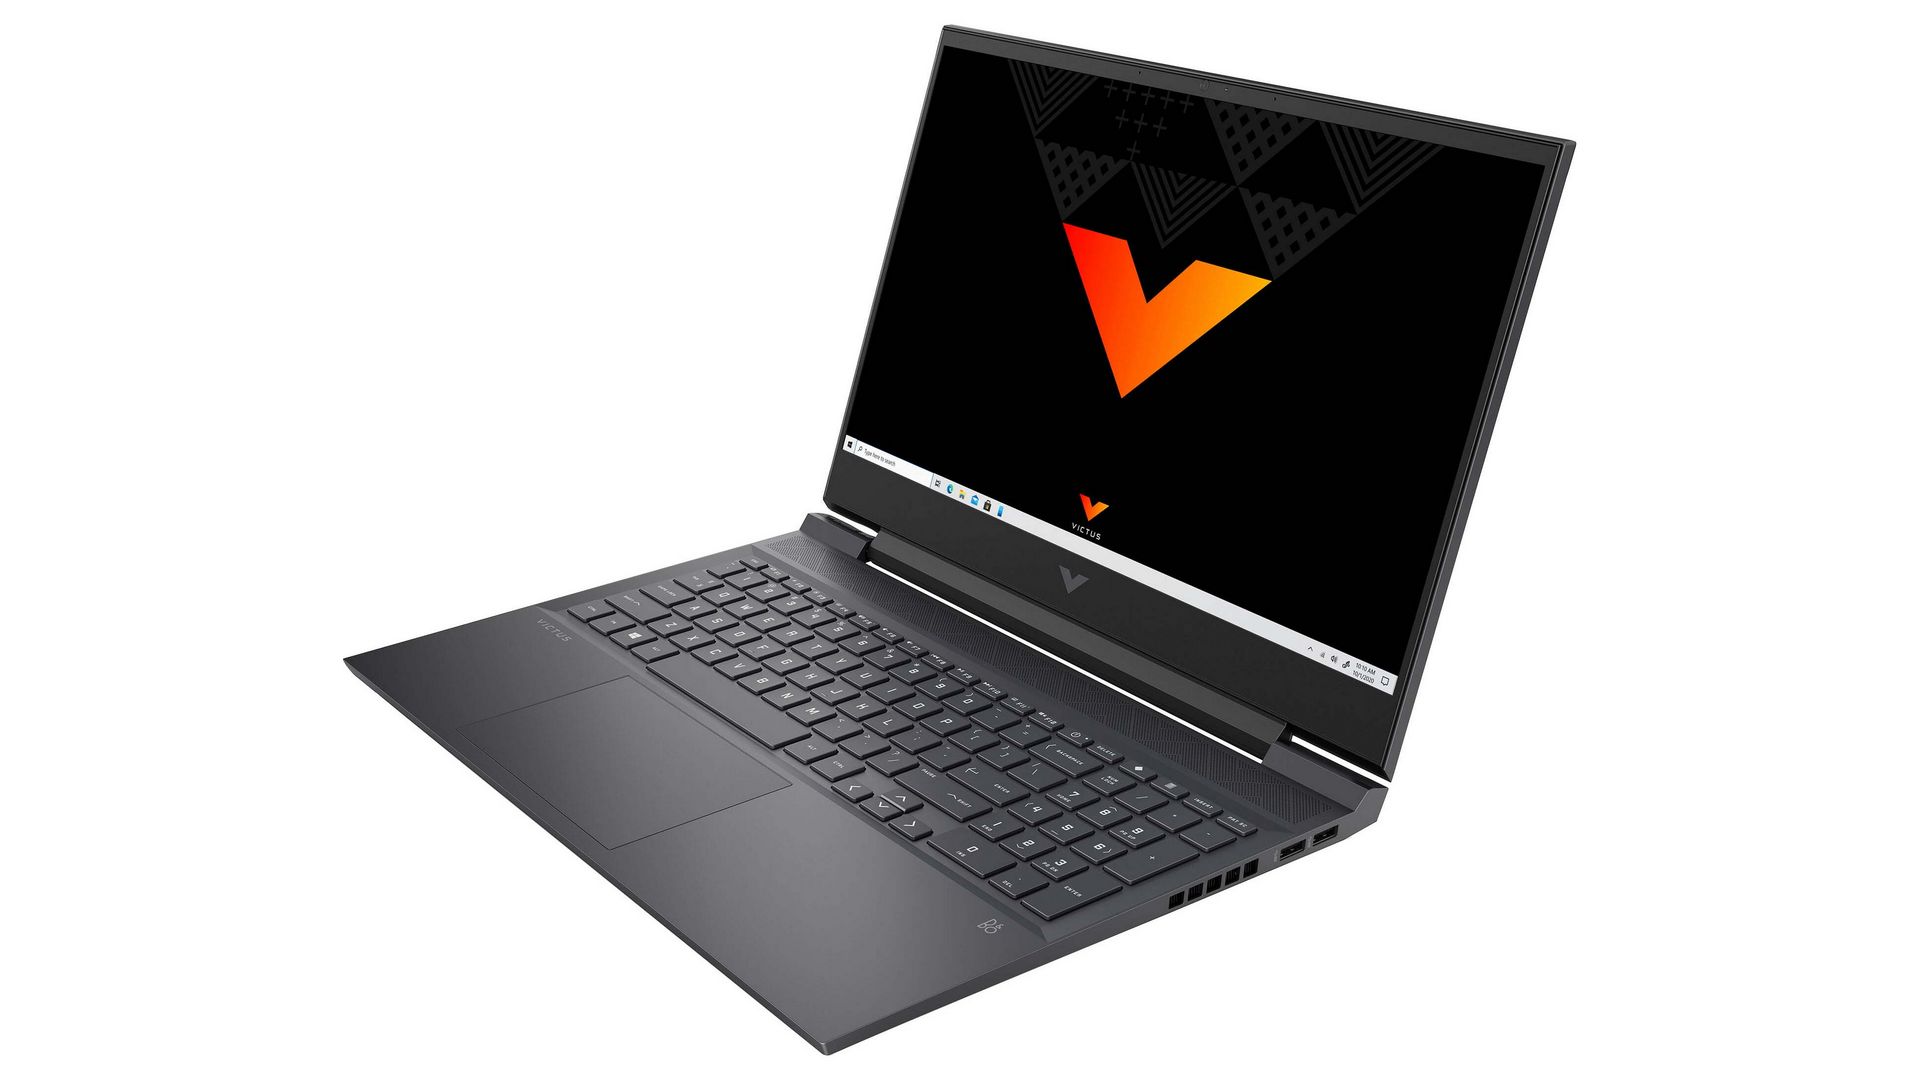 Bạn đang tìm kiếm một chiếc laptop chất lượng với hiệu suất vượt trội để phục vụ cho công việc và giải trí của mình? Hãy đến với Laptop HP VICTUS - thiết kế tối ưu với bộ vi xử lý cao cấp, bộ nhớ lưu trữ dung lượng lớn và tính năng độ phân giải hình ảnh tuyệt vời. Hãy đánh thức niềm đam mê công nghệ của bạn với Laptop HP VICTUS!